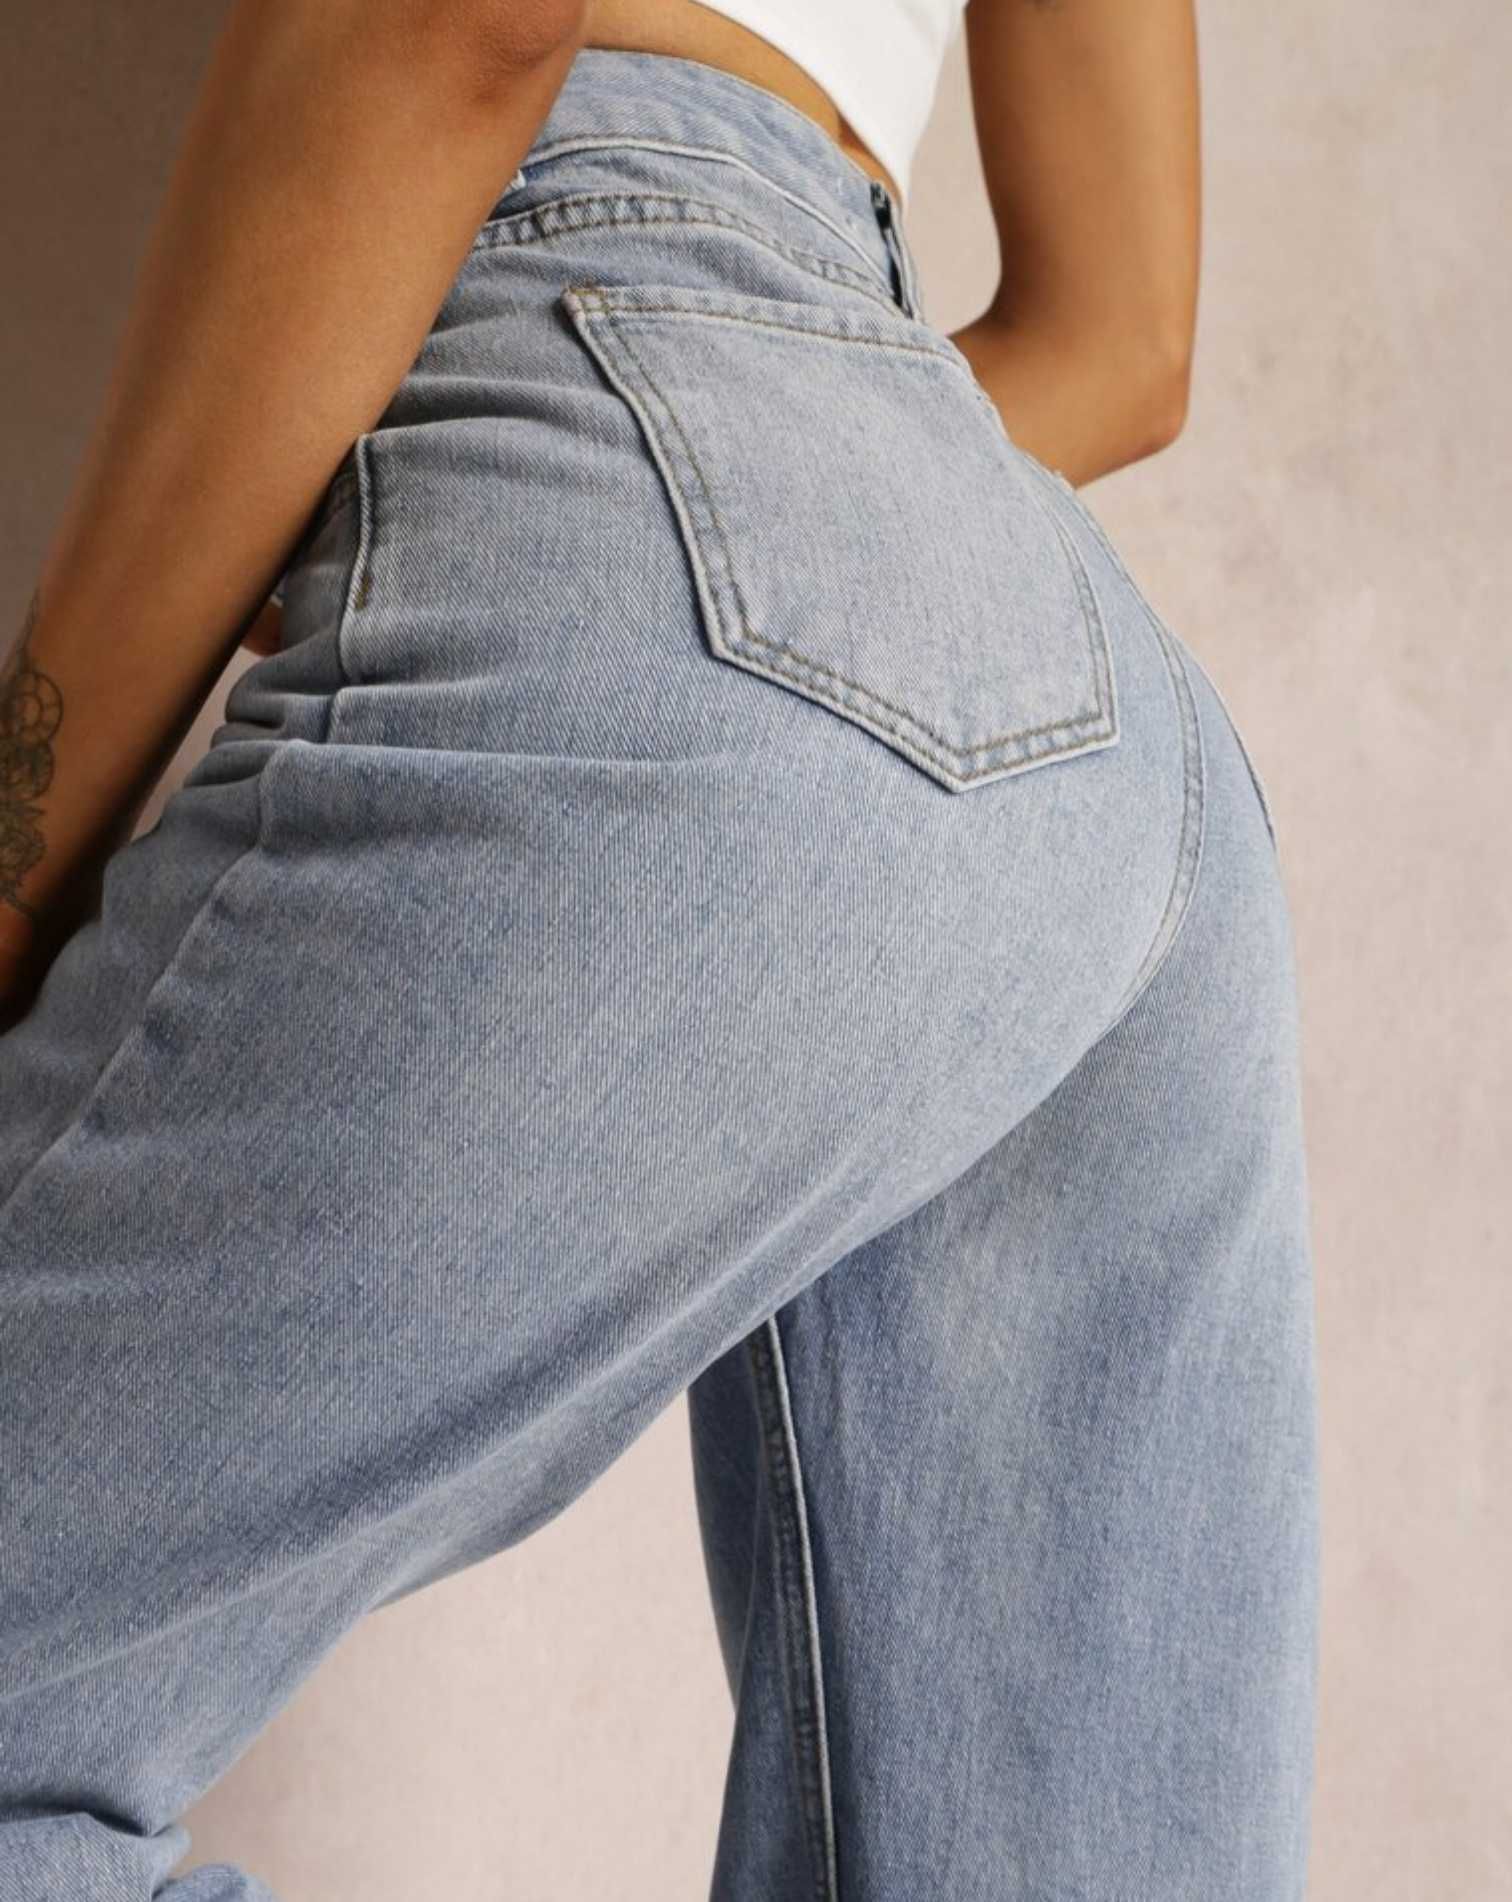 Blugi/jeans dama, blue clasic, S/36, wide/largi, nou cu eticheta